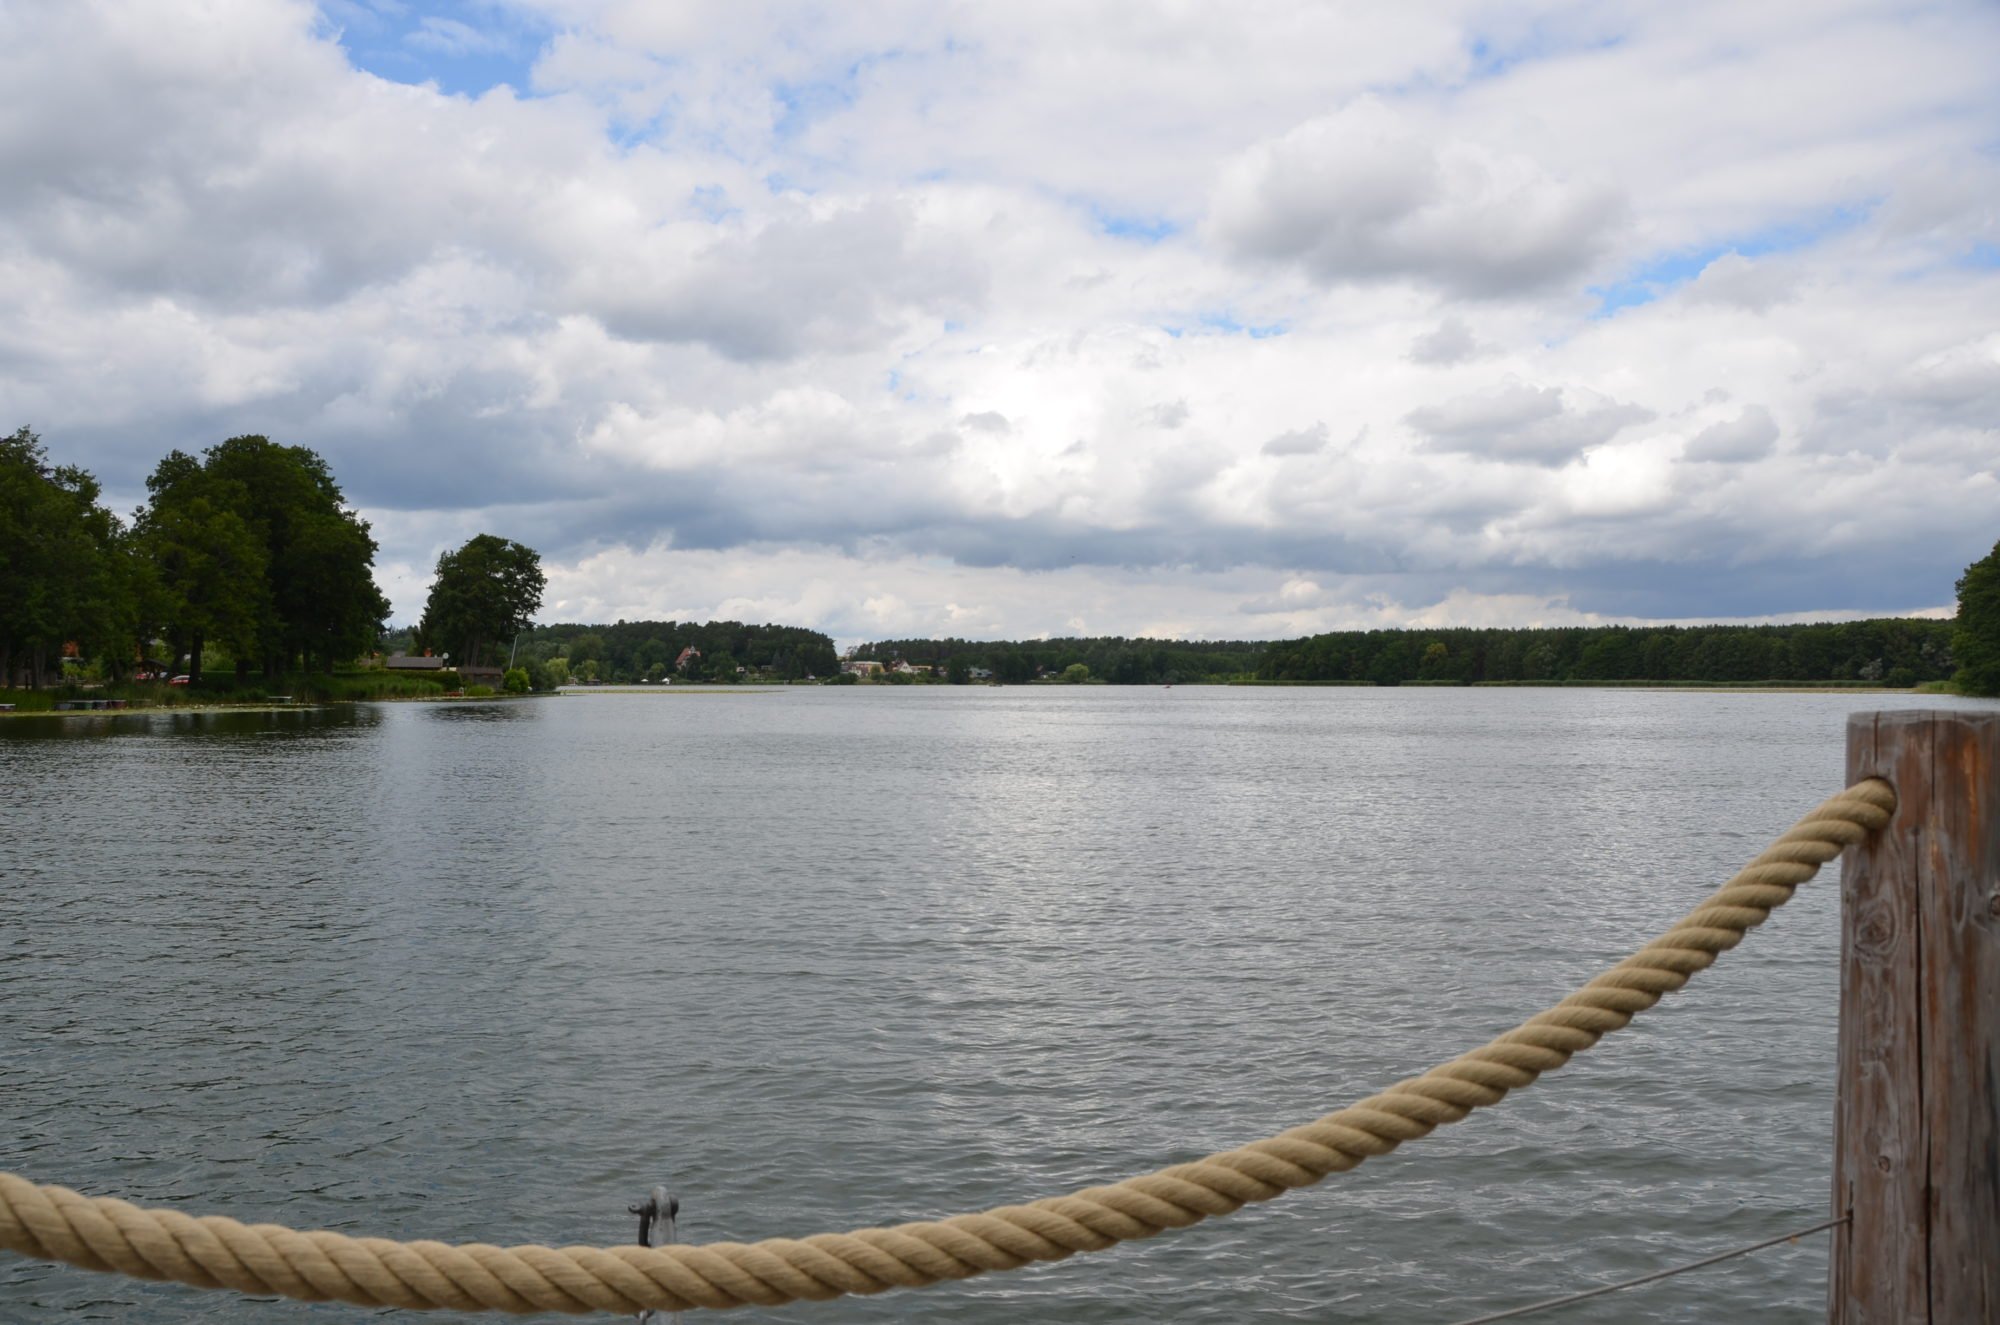 Blick vom Floß aus auf den Pfuhl See. Das Seil des Floßes ist im VOrdergrund zu erkennen.